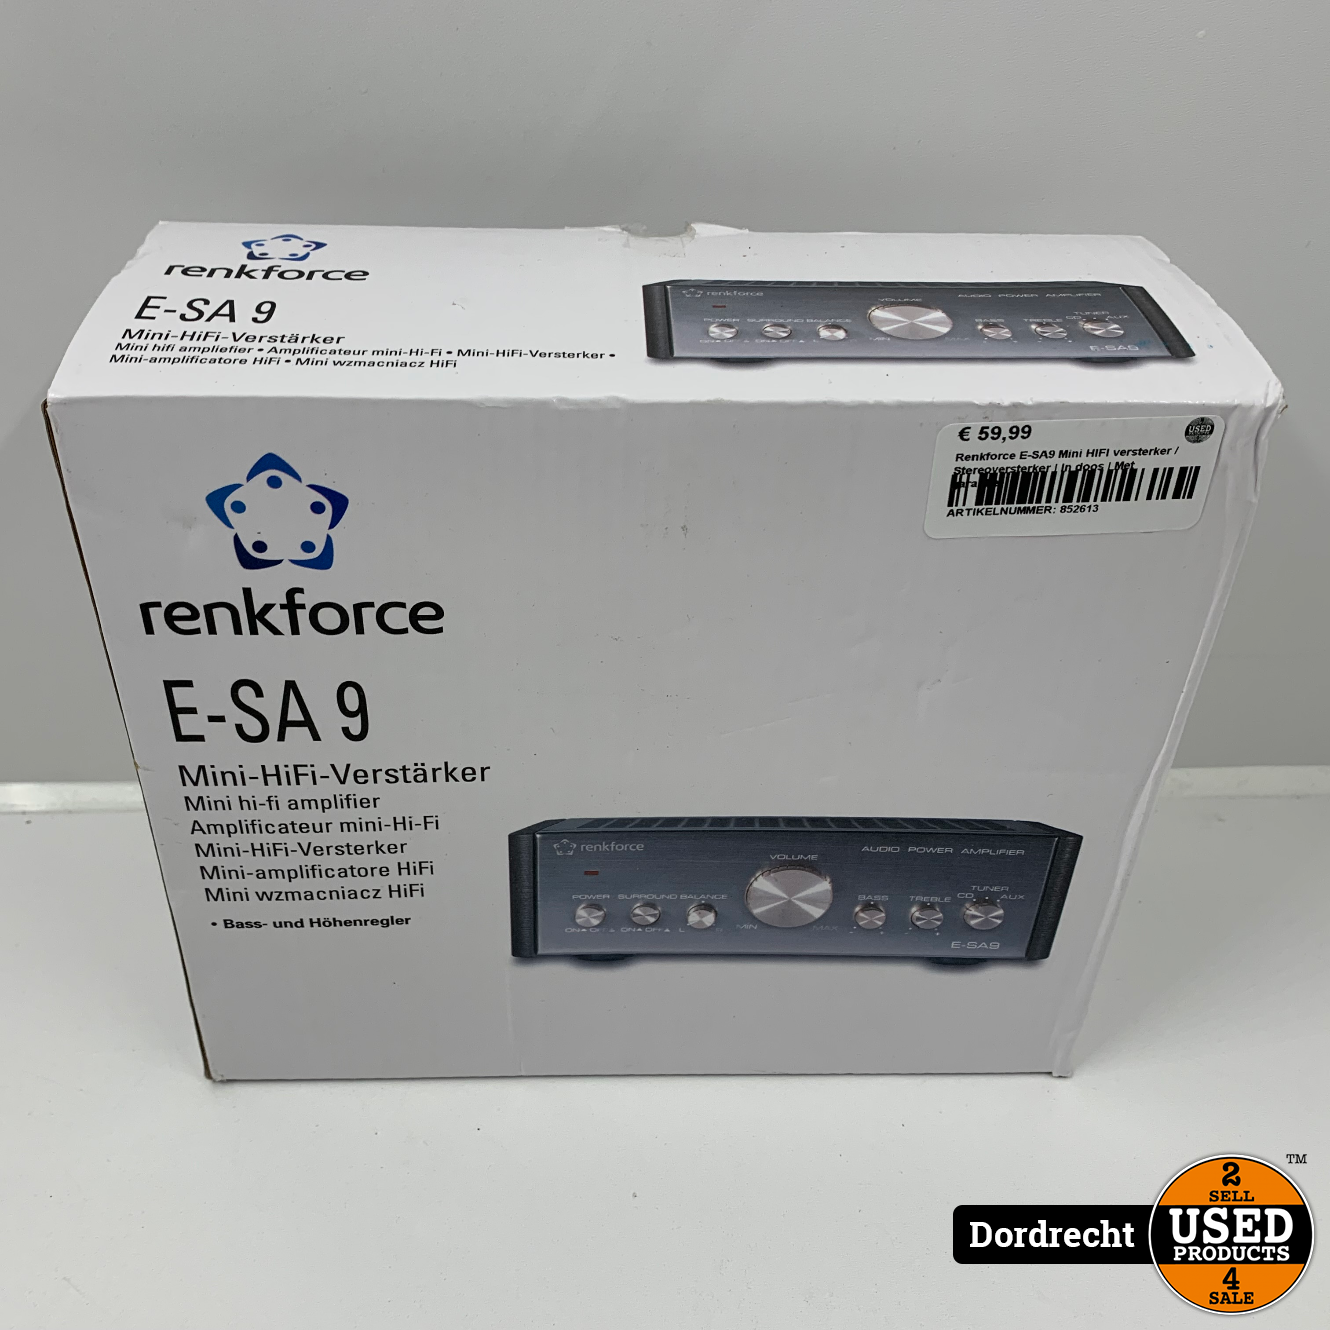 Renkforce E-SA9 Mini HIFI versterker / Stereoversterker 2 x 12 | In doos | Met garantie - Used Products Dordrecht